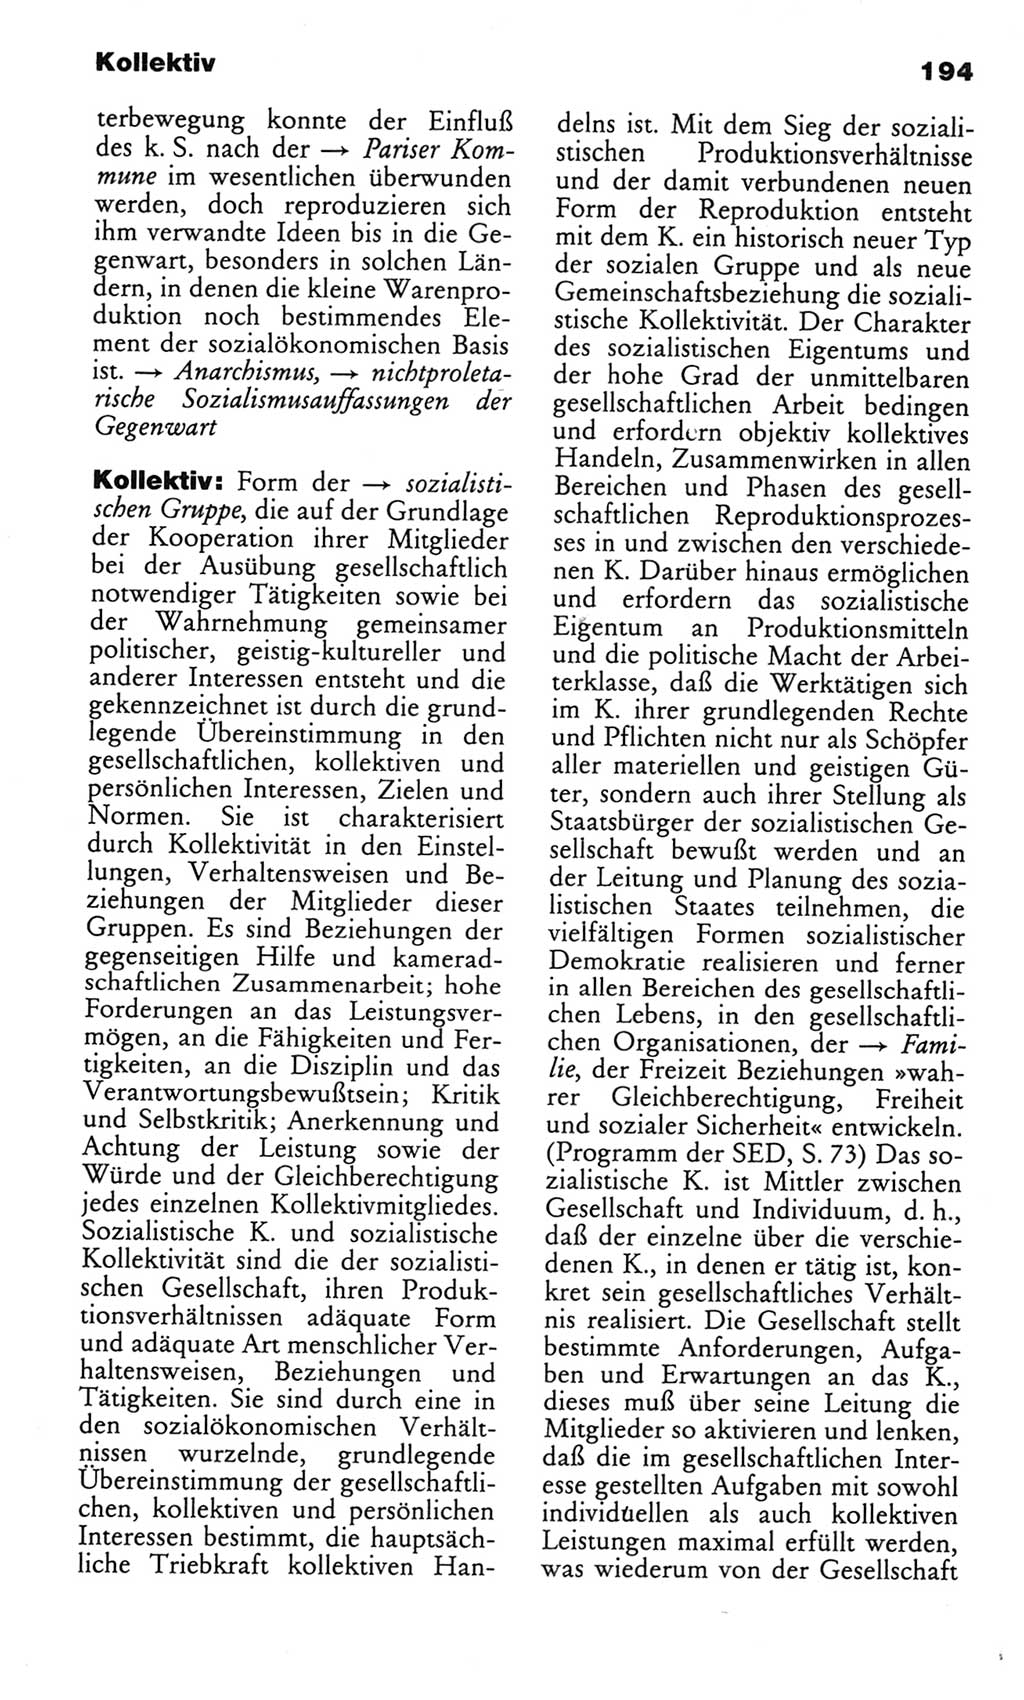 Wörterbuch des wissenschaftlichen Kommunismus [Deutsche Demokratische Republik (DDR)] 1982, Seite 194 (Wb. wiss. Komm. DDR 1982, S. 194)